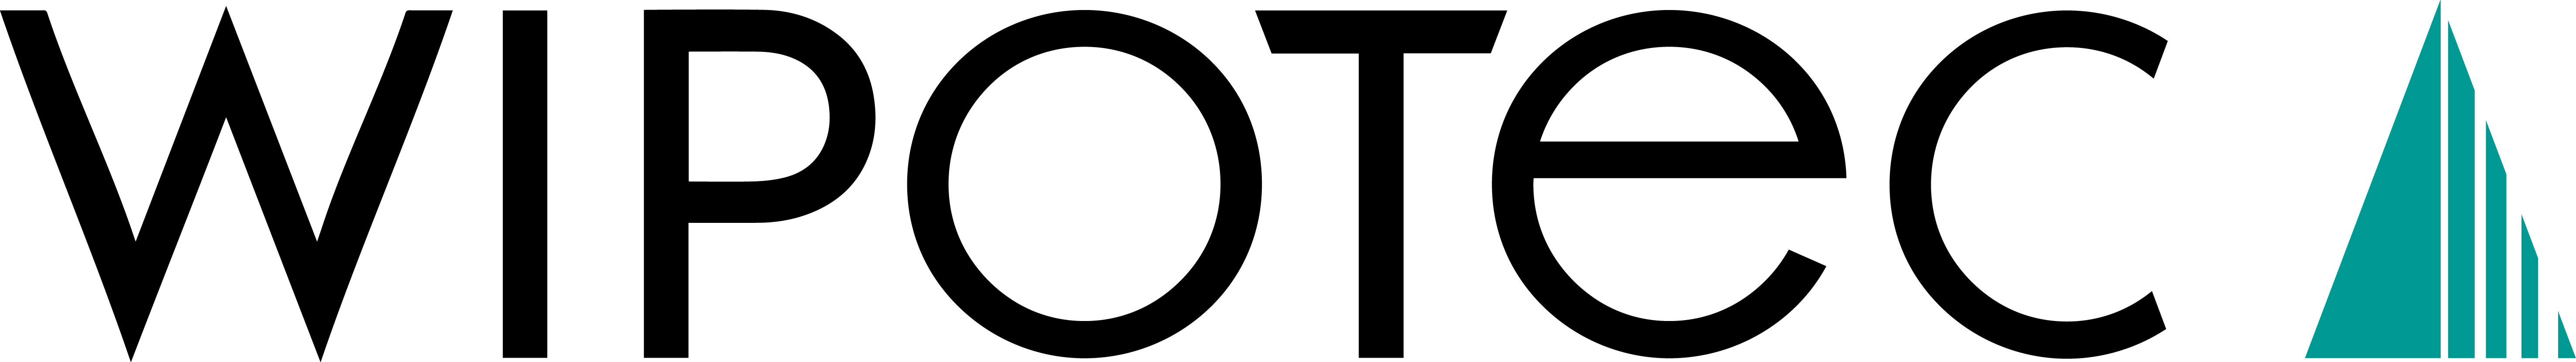 WIPOTEC_Logo_oC_RGB.jpg